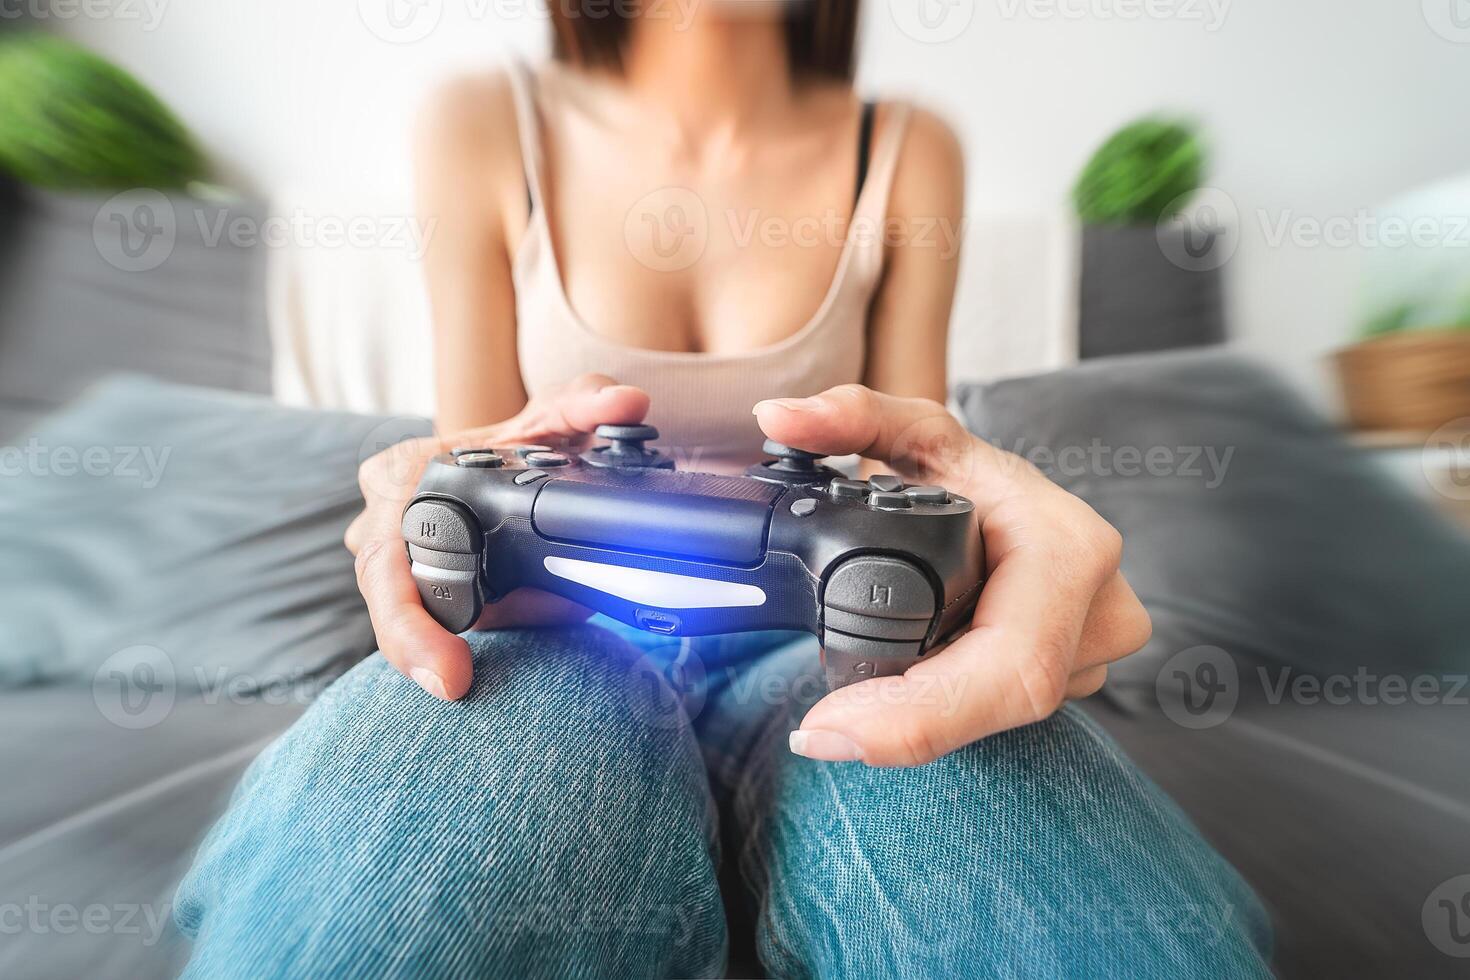 jung Frau spielen online Video Spiele - - weiblich Spieler haben Spaß auf Neu Technologie Konsole - - Spielen Unterhaltung und Jugend tausendjährig Generation Lebensstil Konzept foto